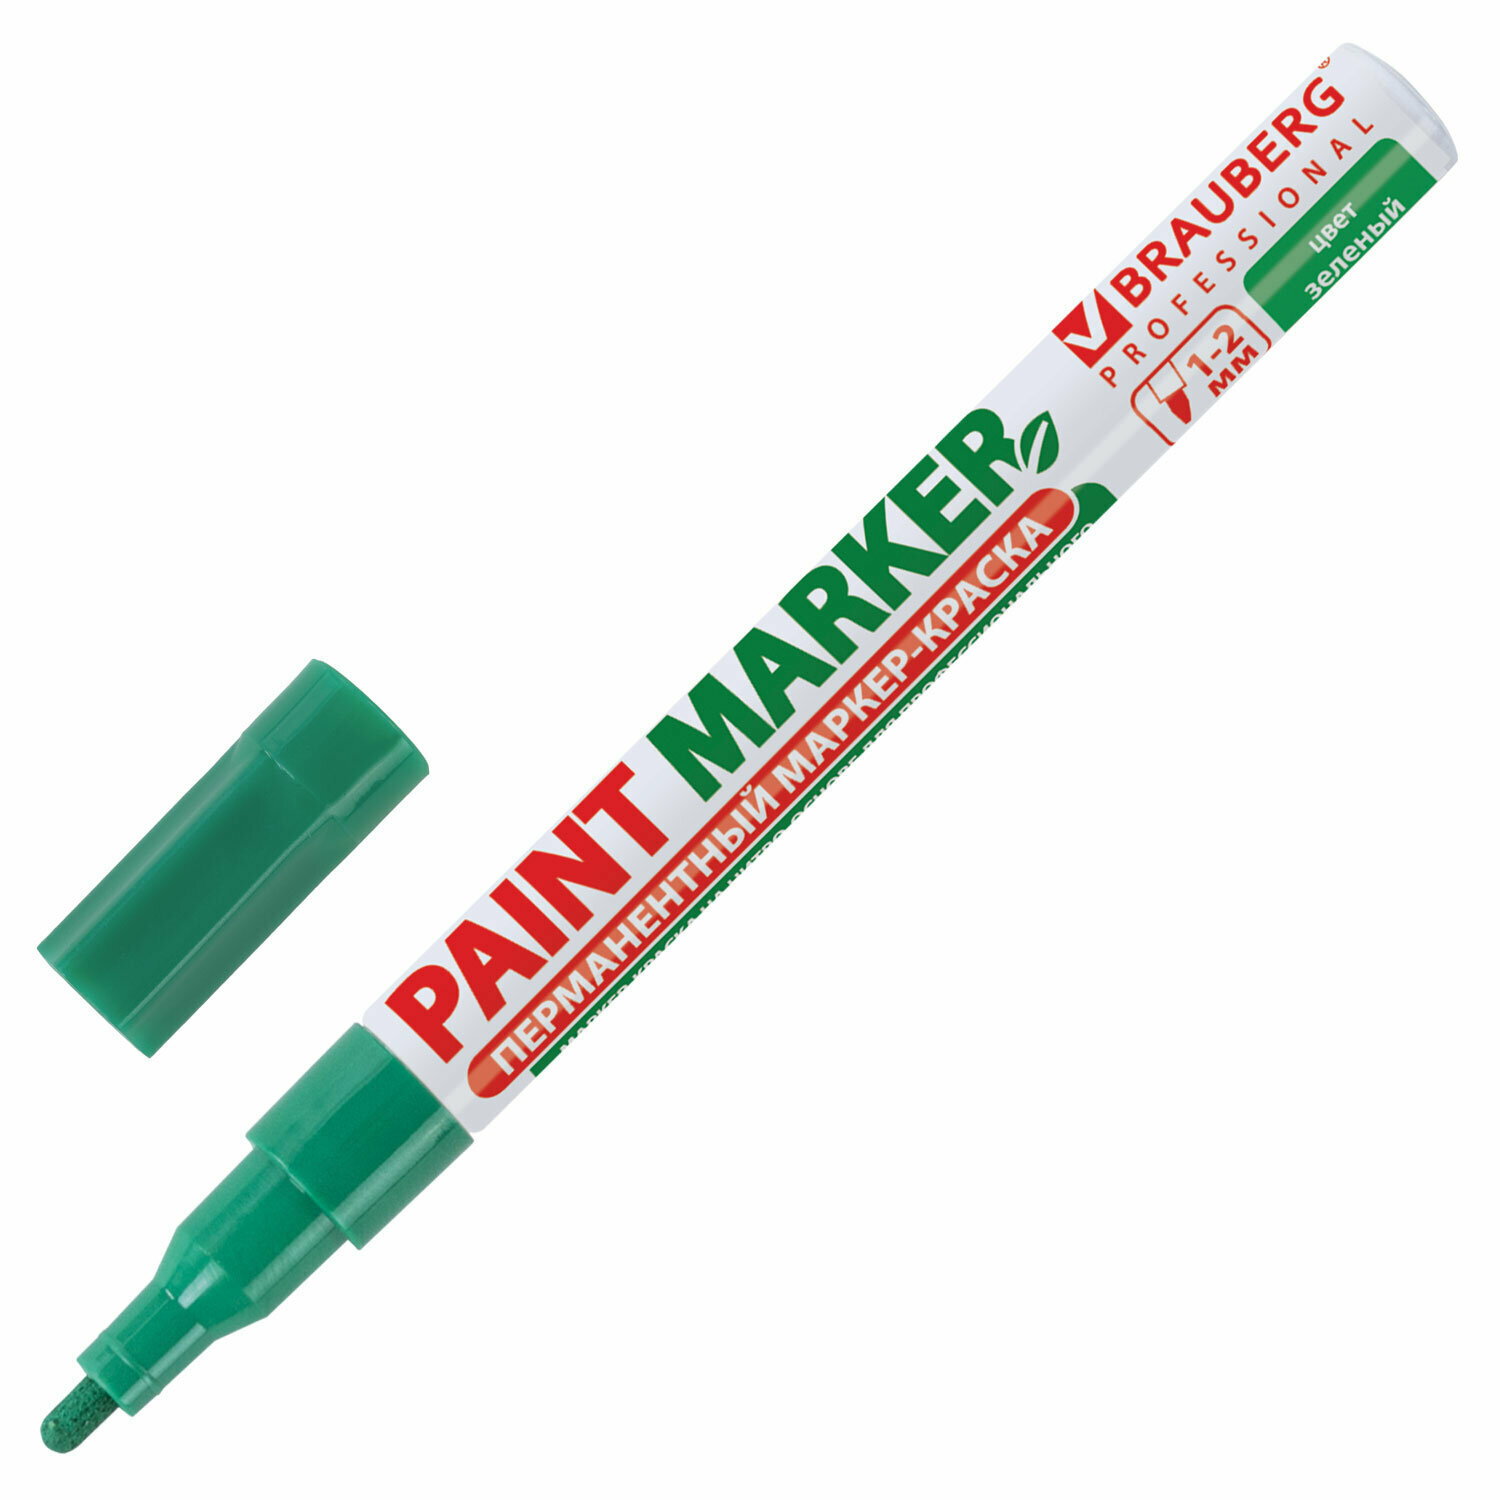 Маркер краска лаковый paint marker 2 мм строительный зеленый, фломастер, без запаха, алюминиевый корпус, Brauberg Proffessional, 150870